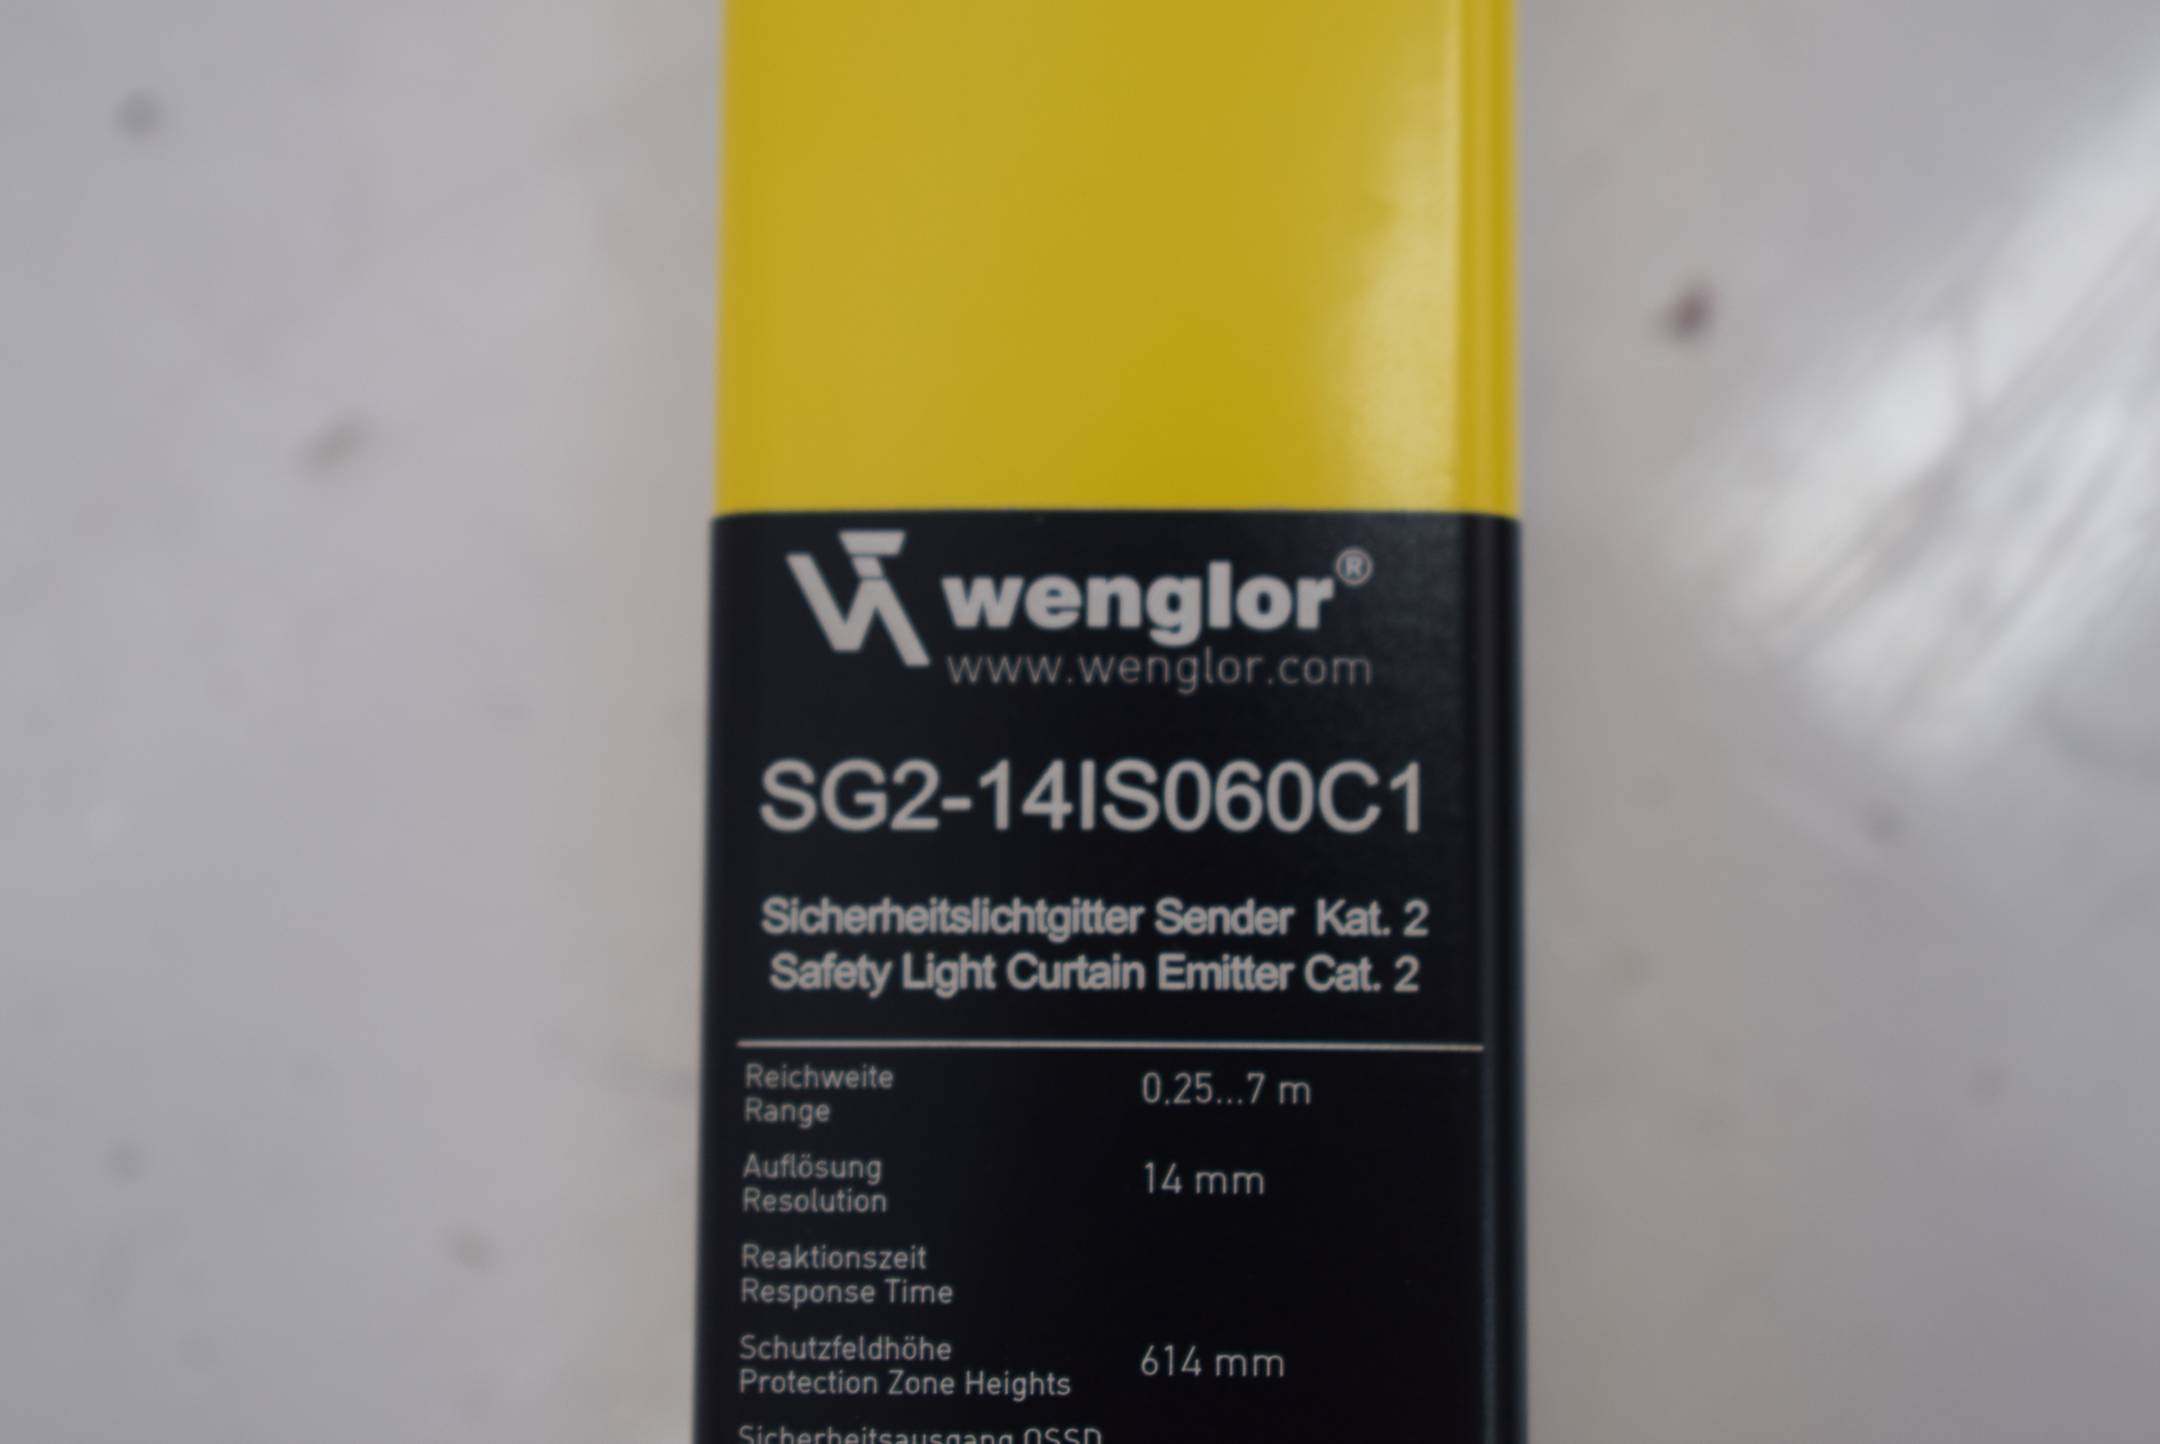 Wenglor Sicherheitslichtgitter SG2-14IS060C1